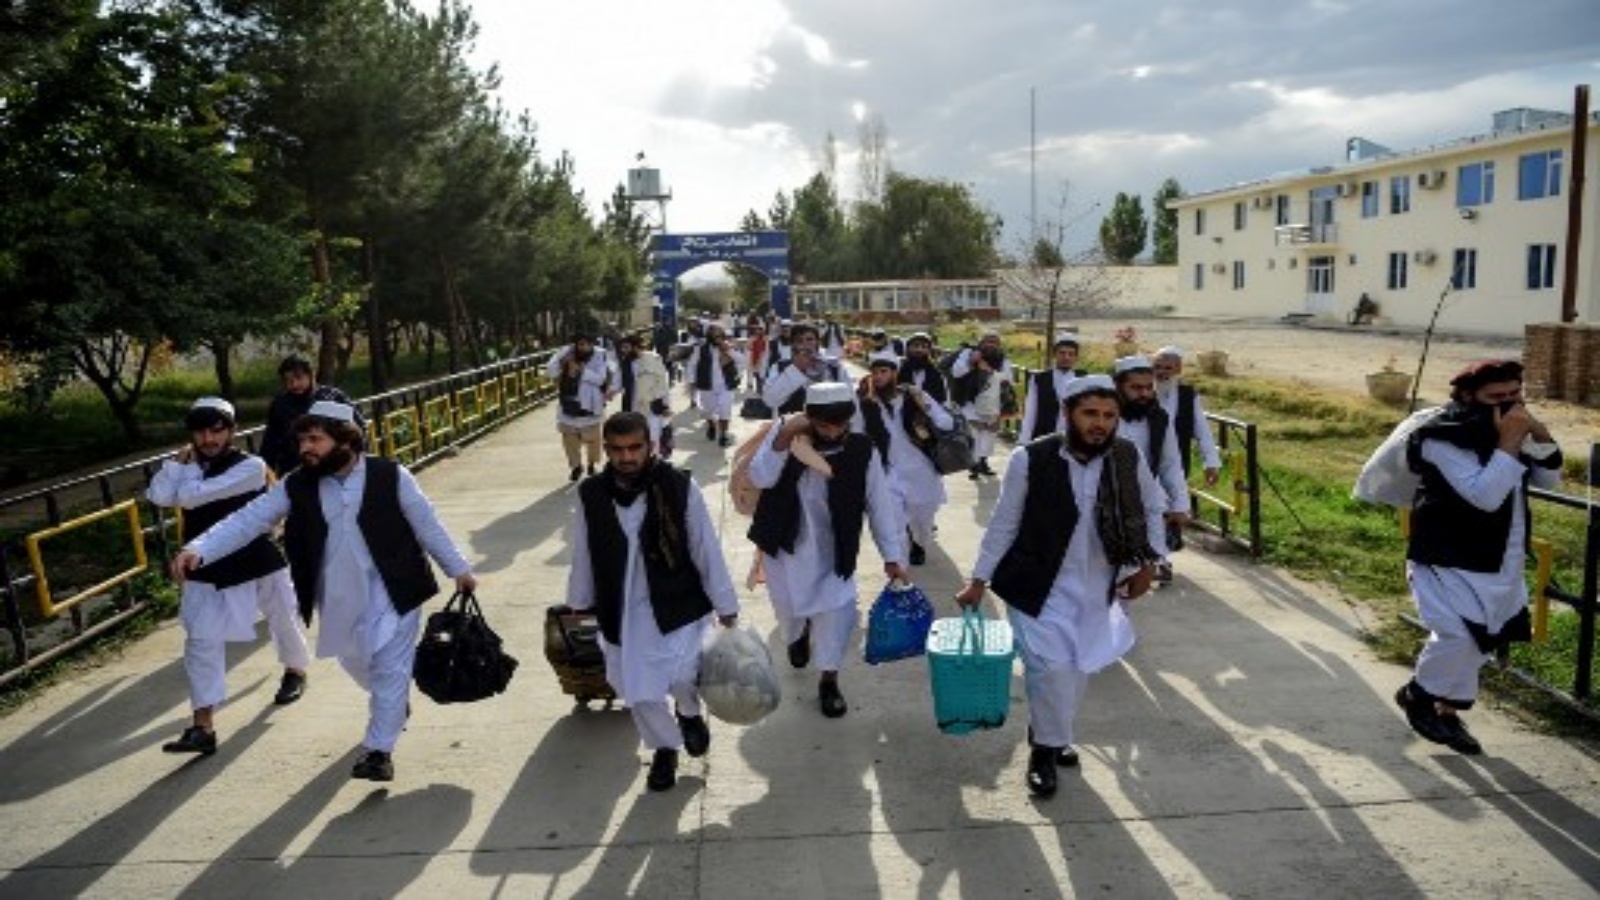 سجناء من طالبان مع أمتعتهم وهم في طريقهم للإفراج عنهم من سجن بول شرخي ، في ضواحي كابول